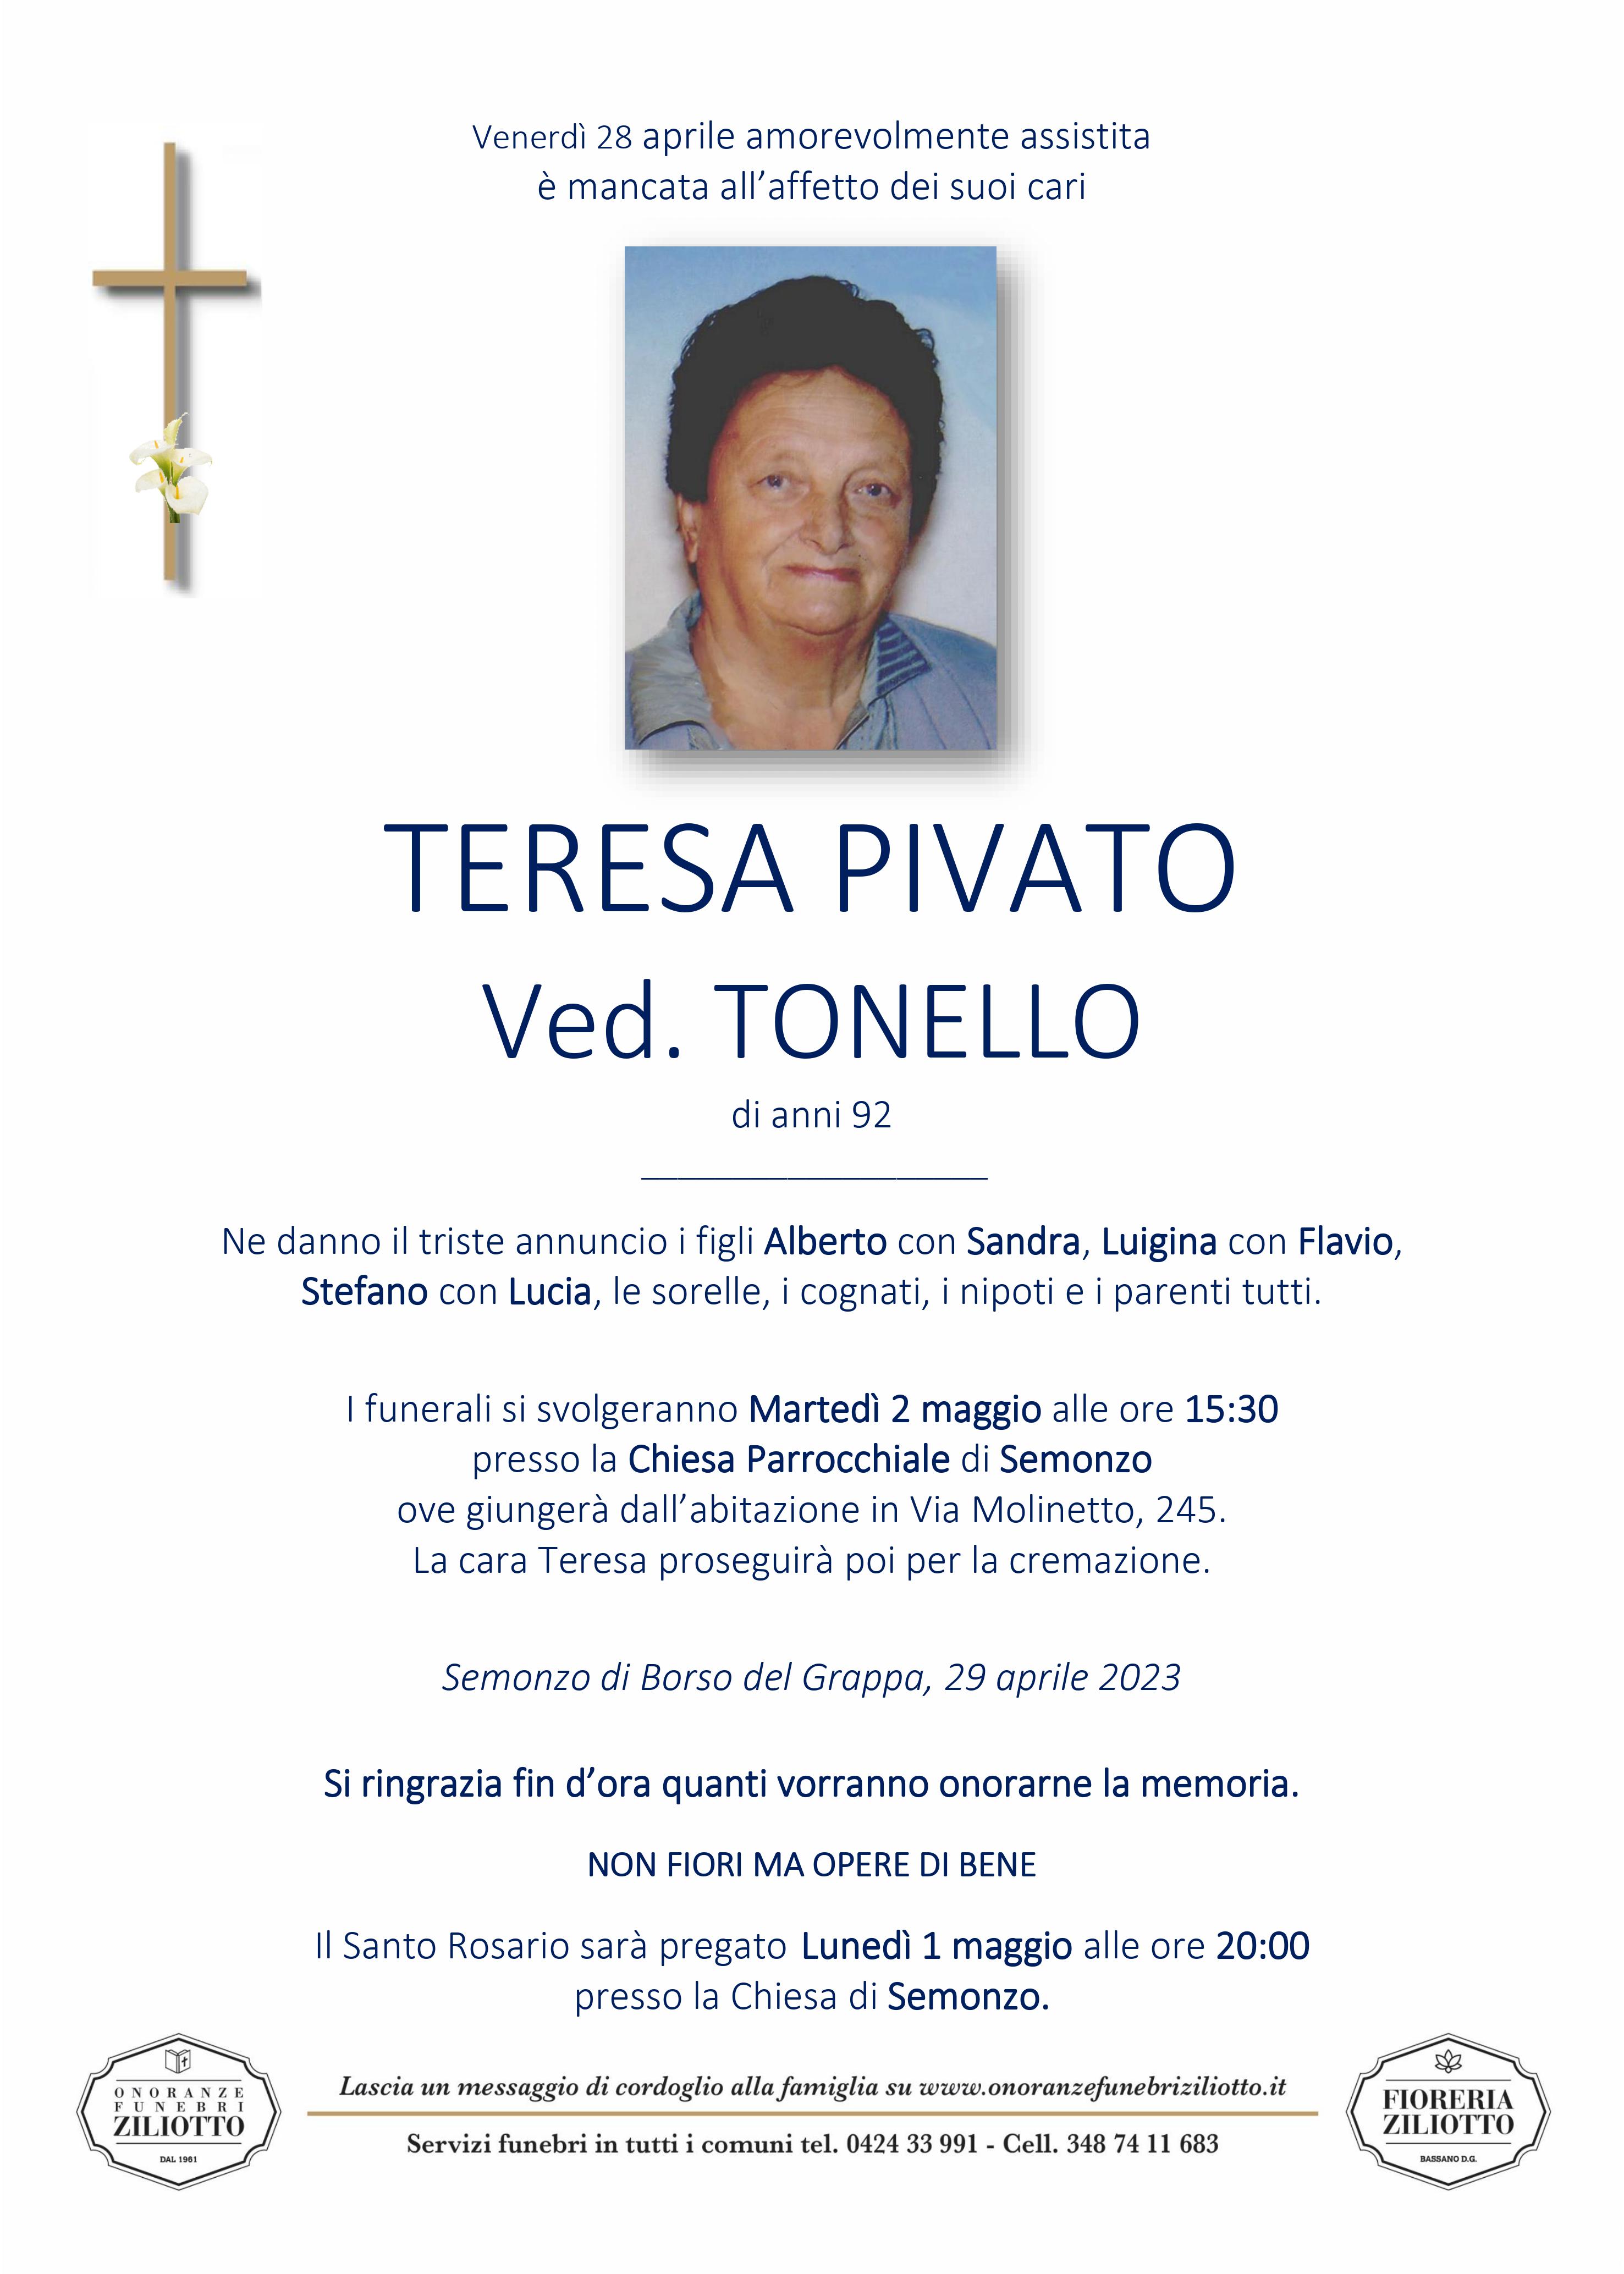 Teresa Pivato - 92 anni - Semonzo di Borso del Gr